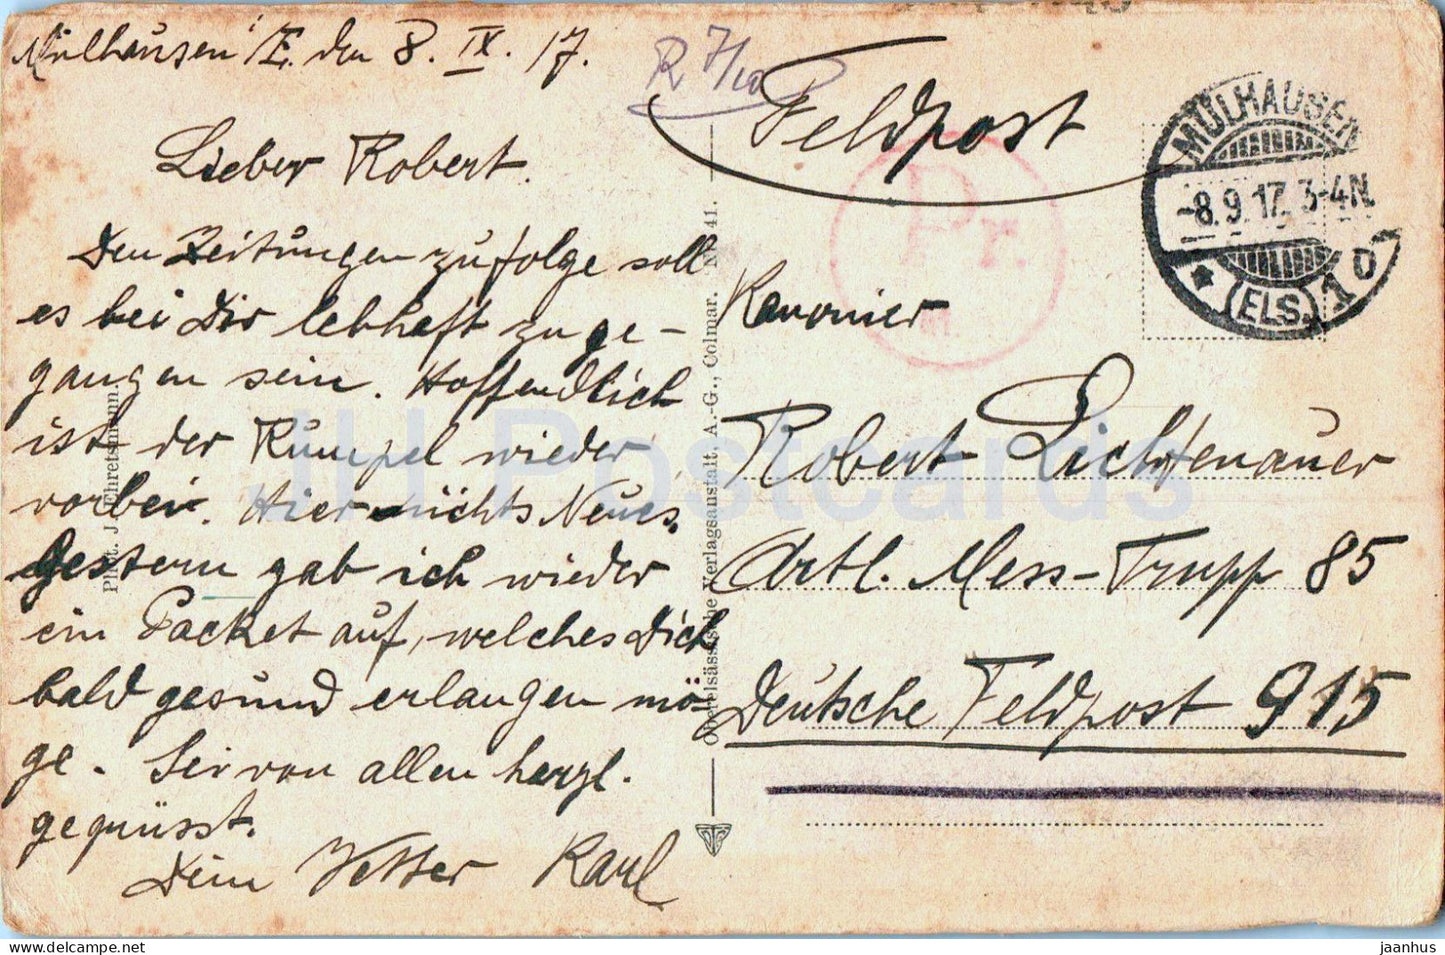 Mittlach mit Rotenbachkopf vom Wege Metzeral - Feldpost - courrier militaire - carte postale ancienne - 1917 - France - utilisé 